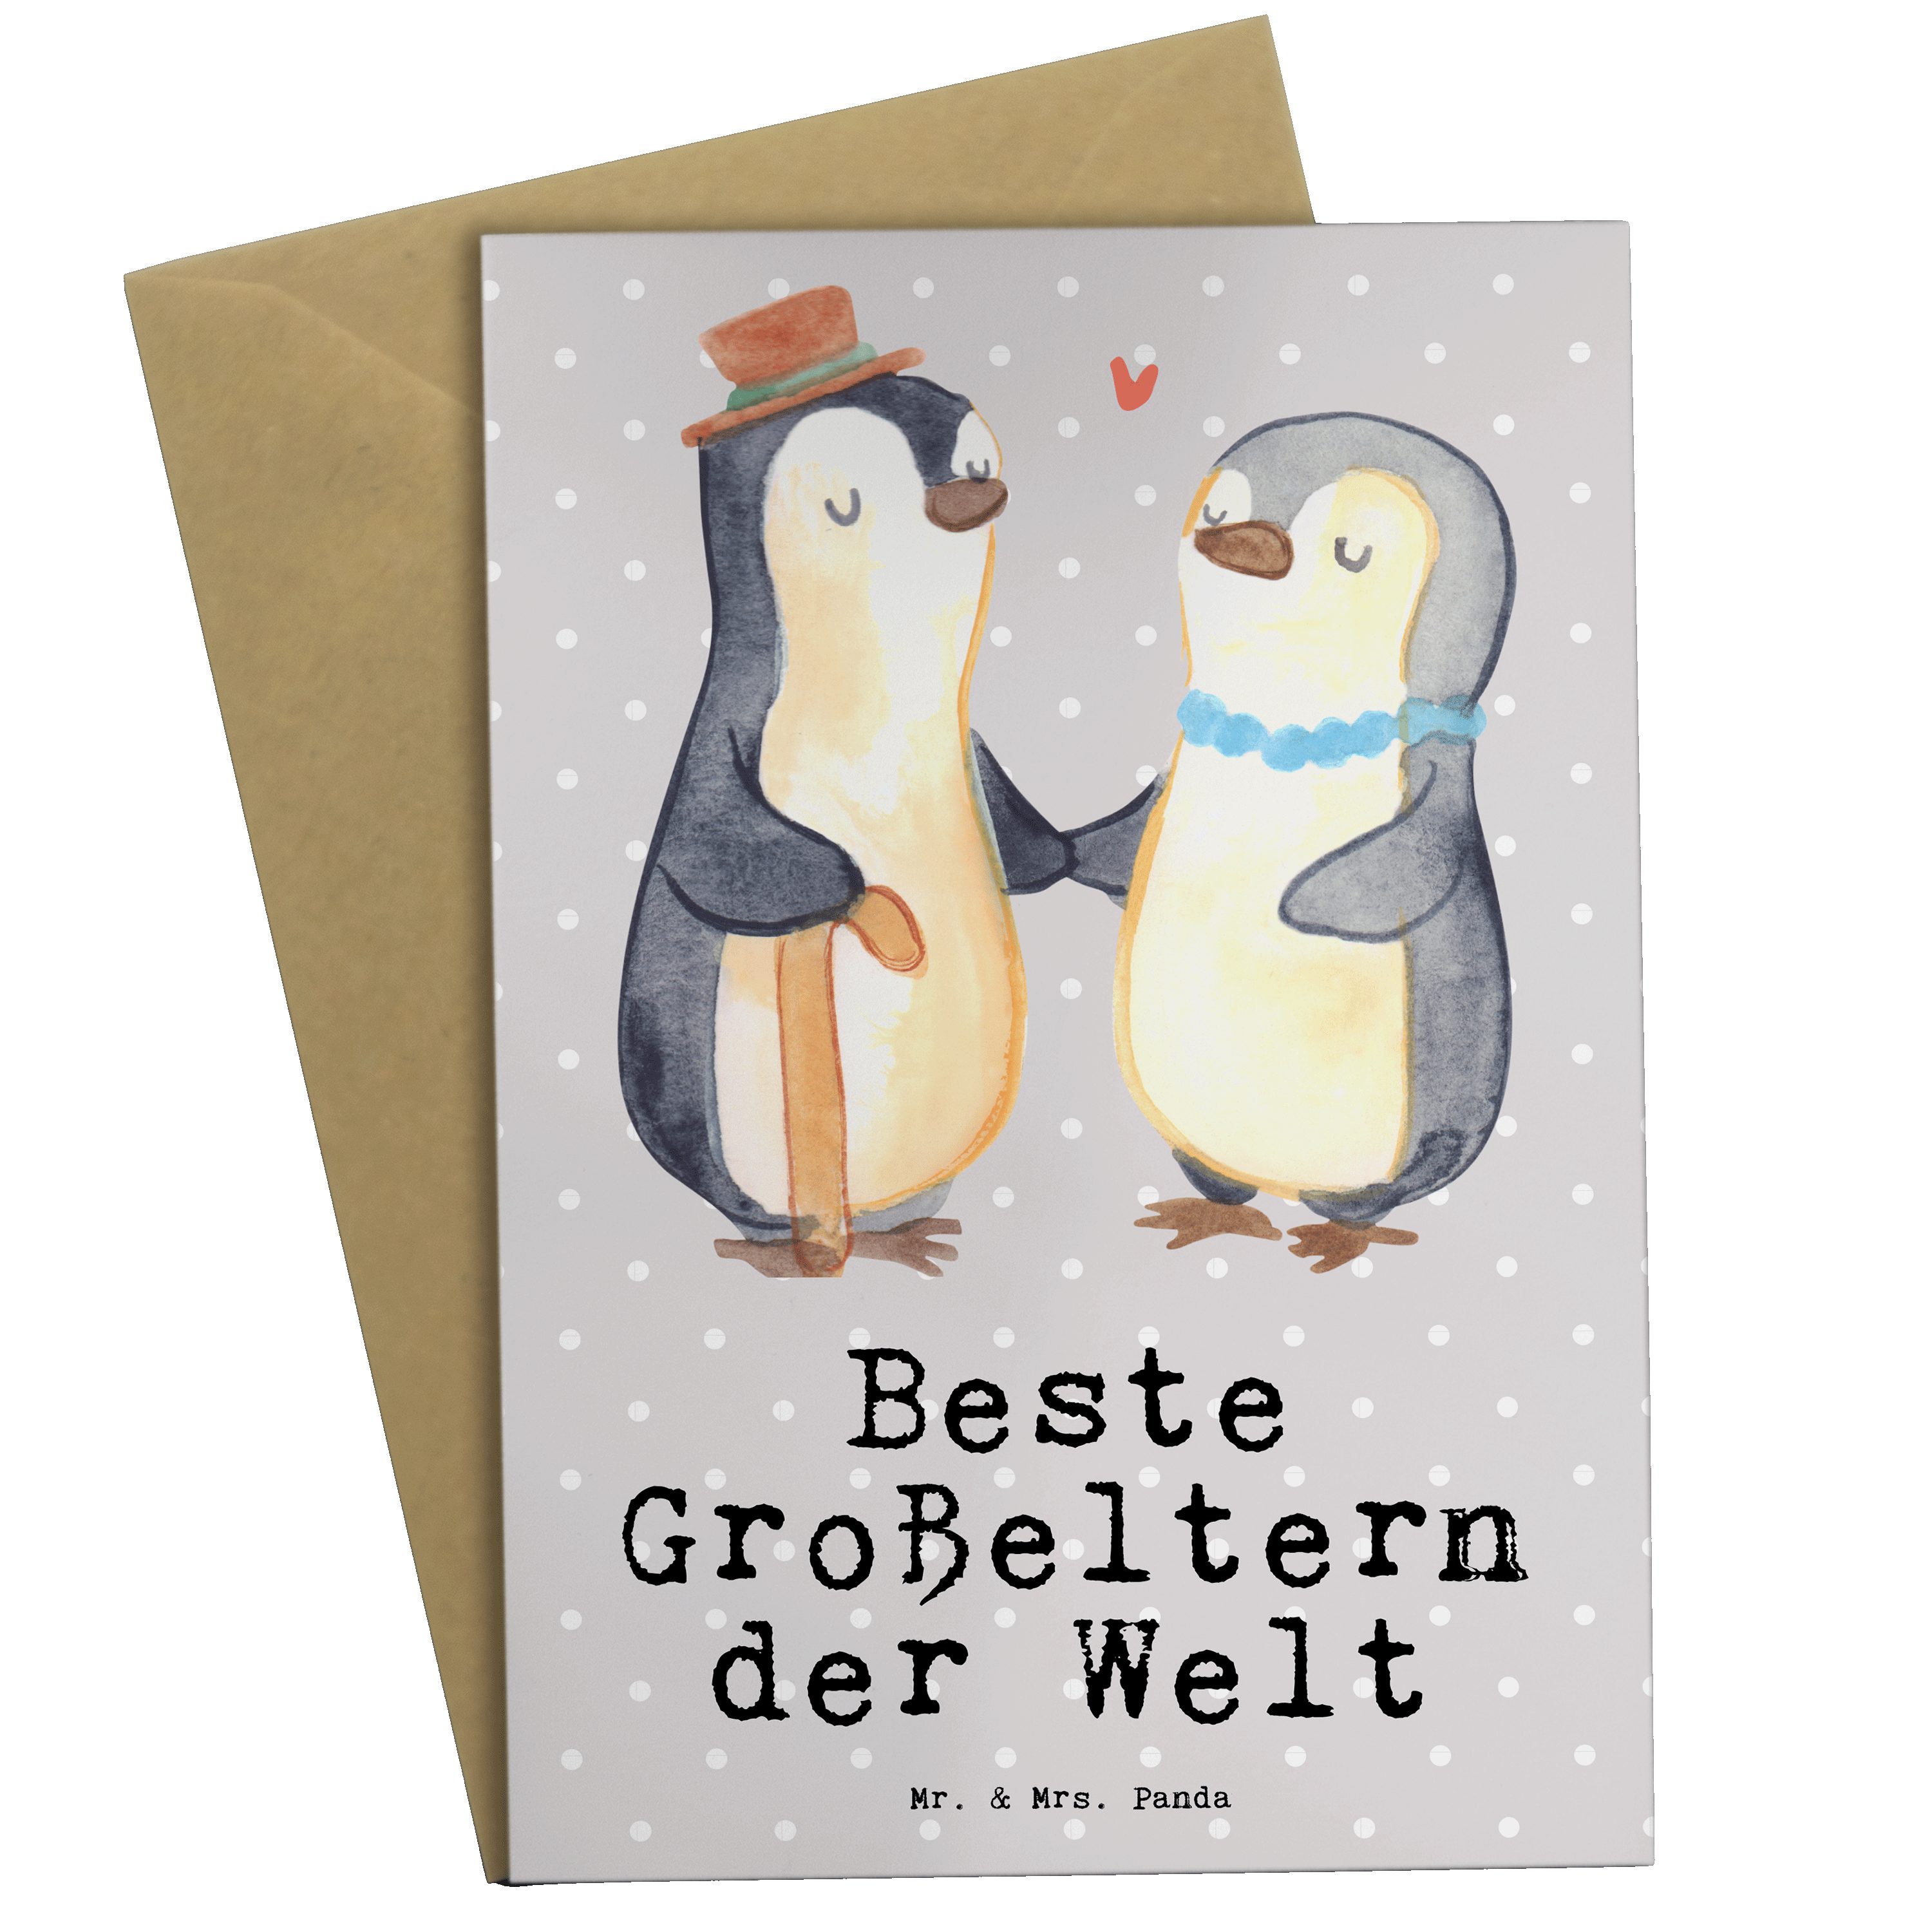 Grau Beste der - Geschenk, Mr. Mrs. Panda - Welt Pastell Hochzeit Grußkarte & Pinguin Großeltern